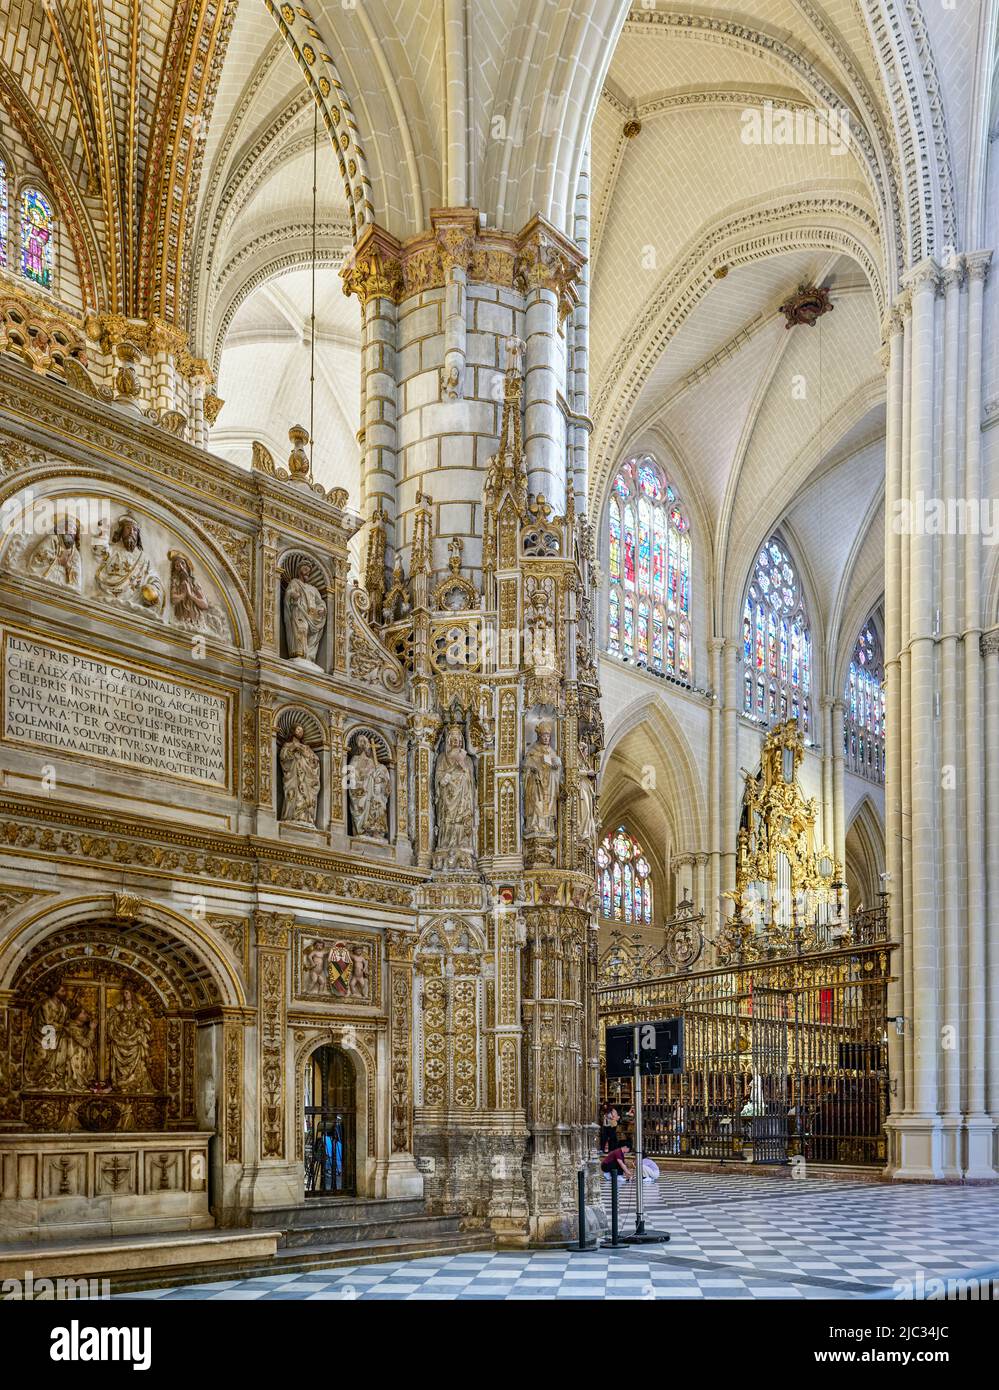 Toledo Prime Cathedral. Toledo, Castilla La Mancha, Spain.. Stock Photo